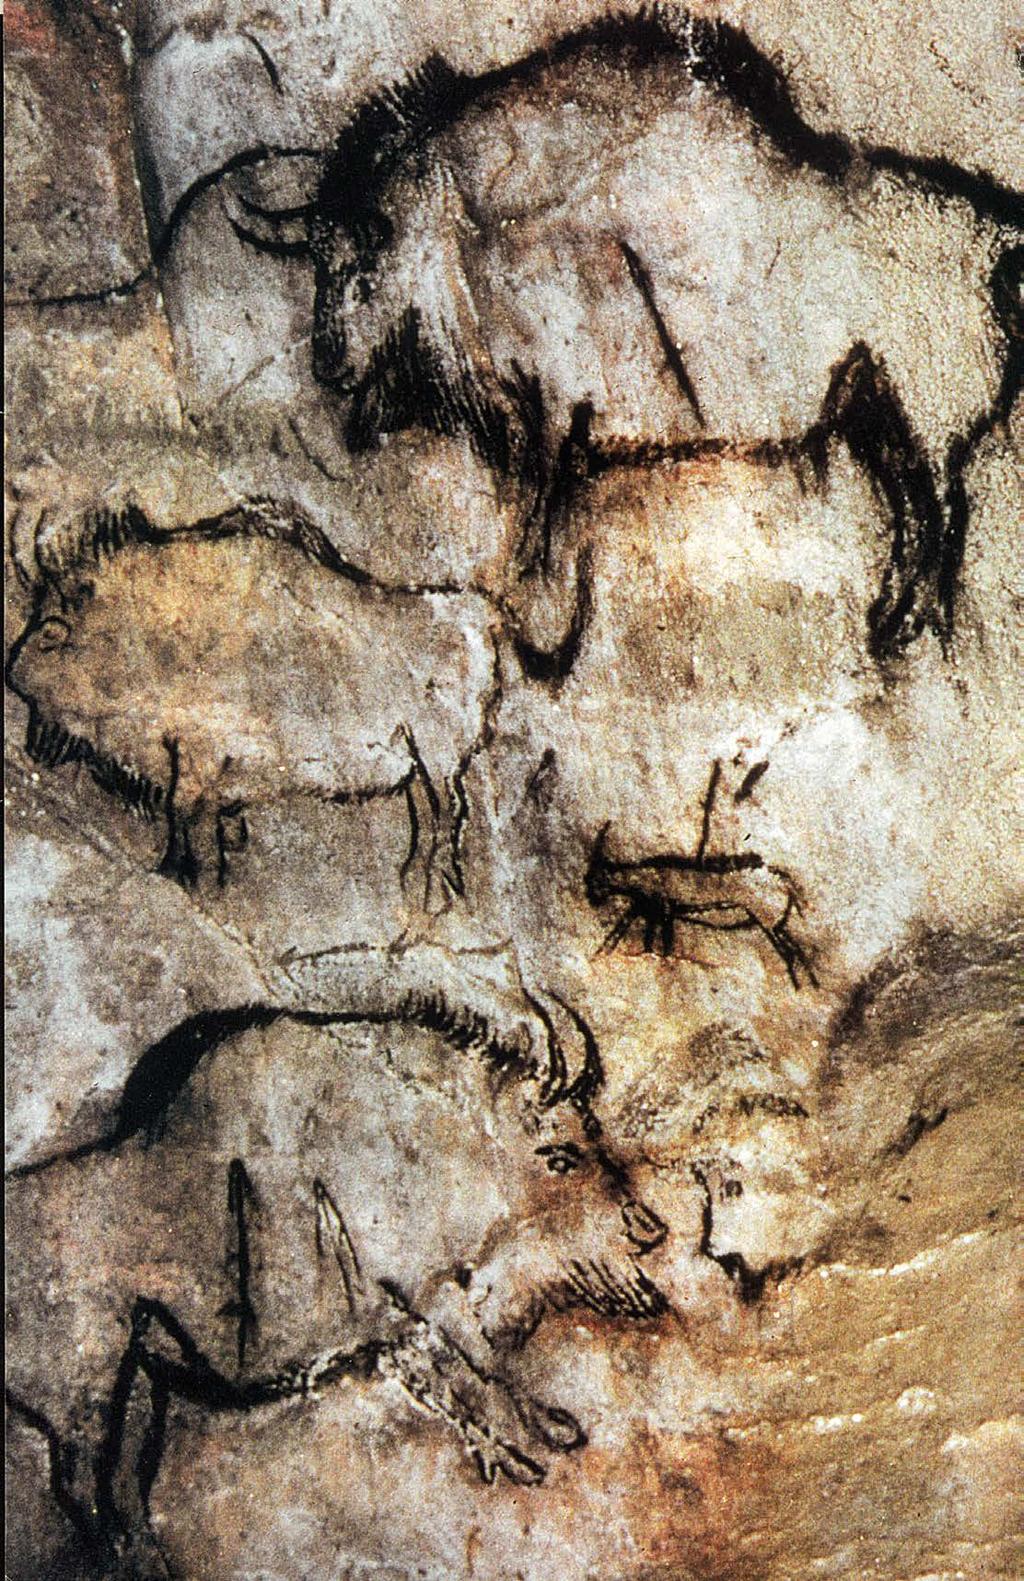 IL CONFRONTO UNA SCENA DI CACCIA DI ETÀ PALEOLITICA La Grotta di Chauvet IN ETÀ PALEOLITICA, L ARTE COME MAGIA In un periodo che risale a circa 35 000 anni fa, l uomo inizia a servirsi dell immagine